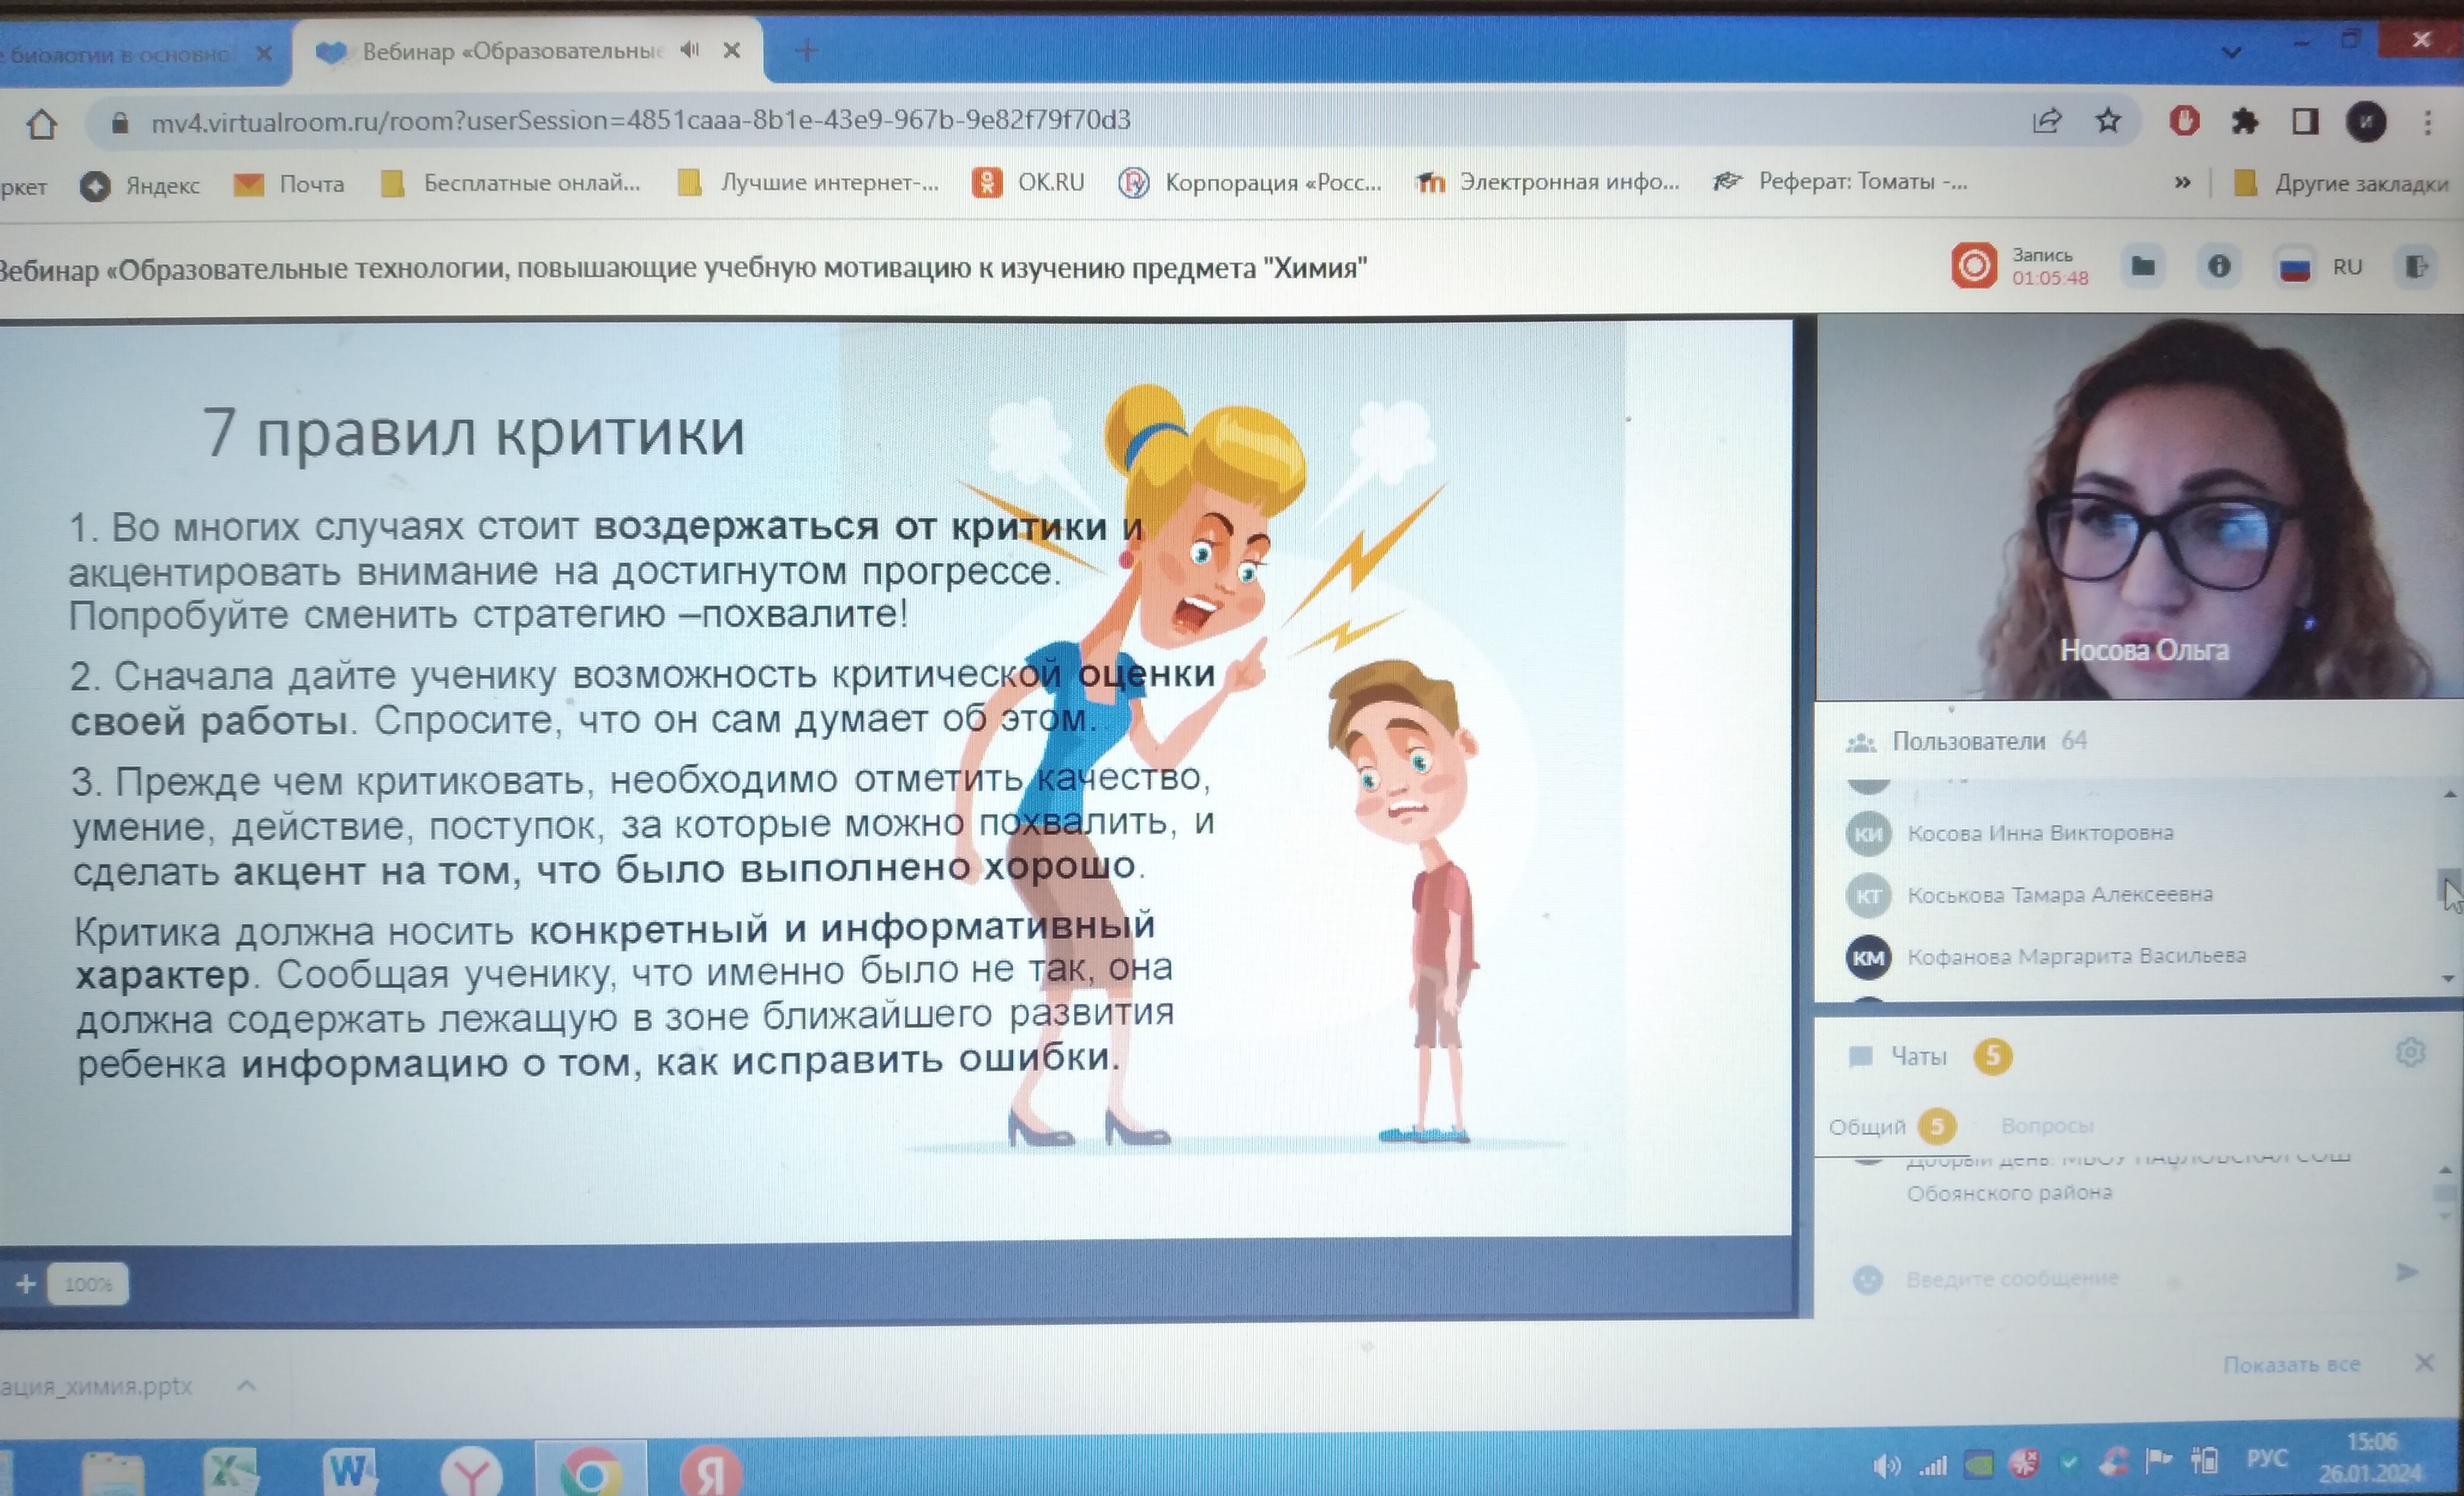 ОГБУ ДПО КИРО провела в формате ВКС  региональный методический вебинар.